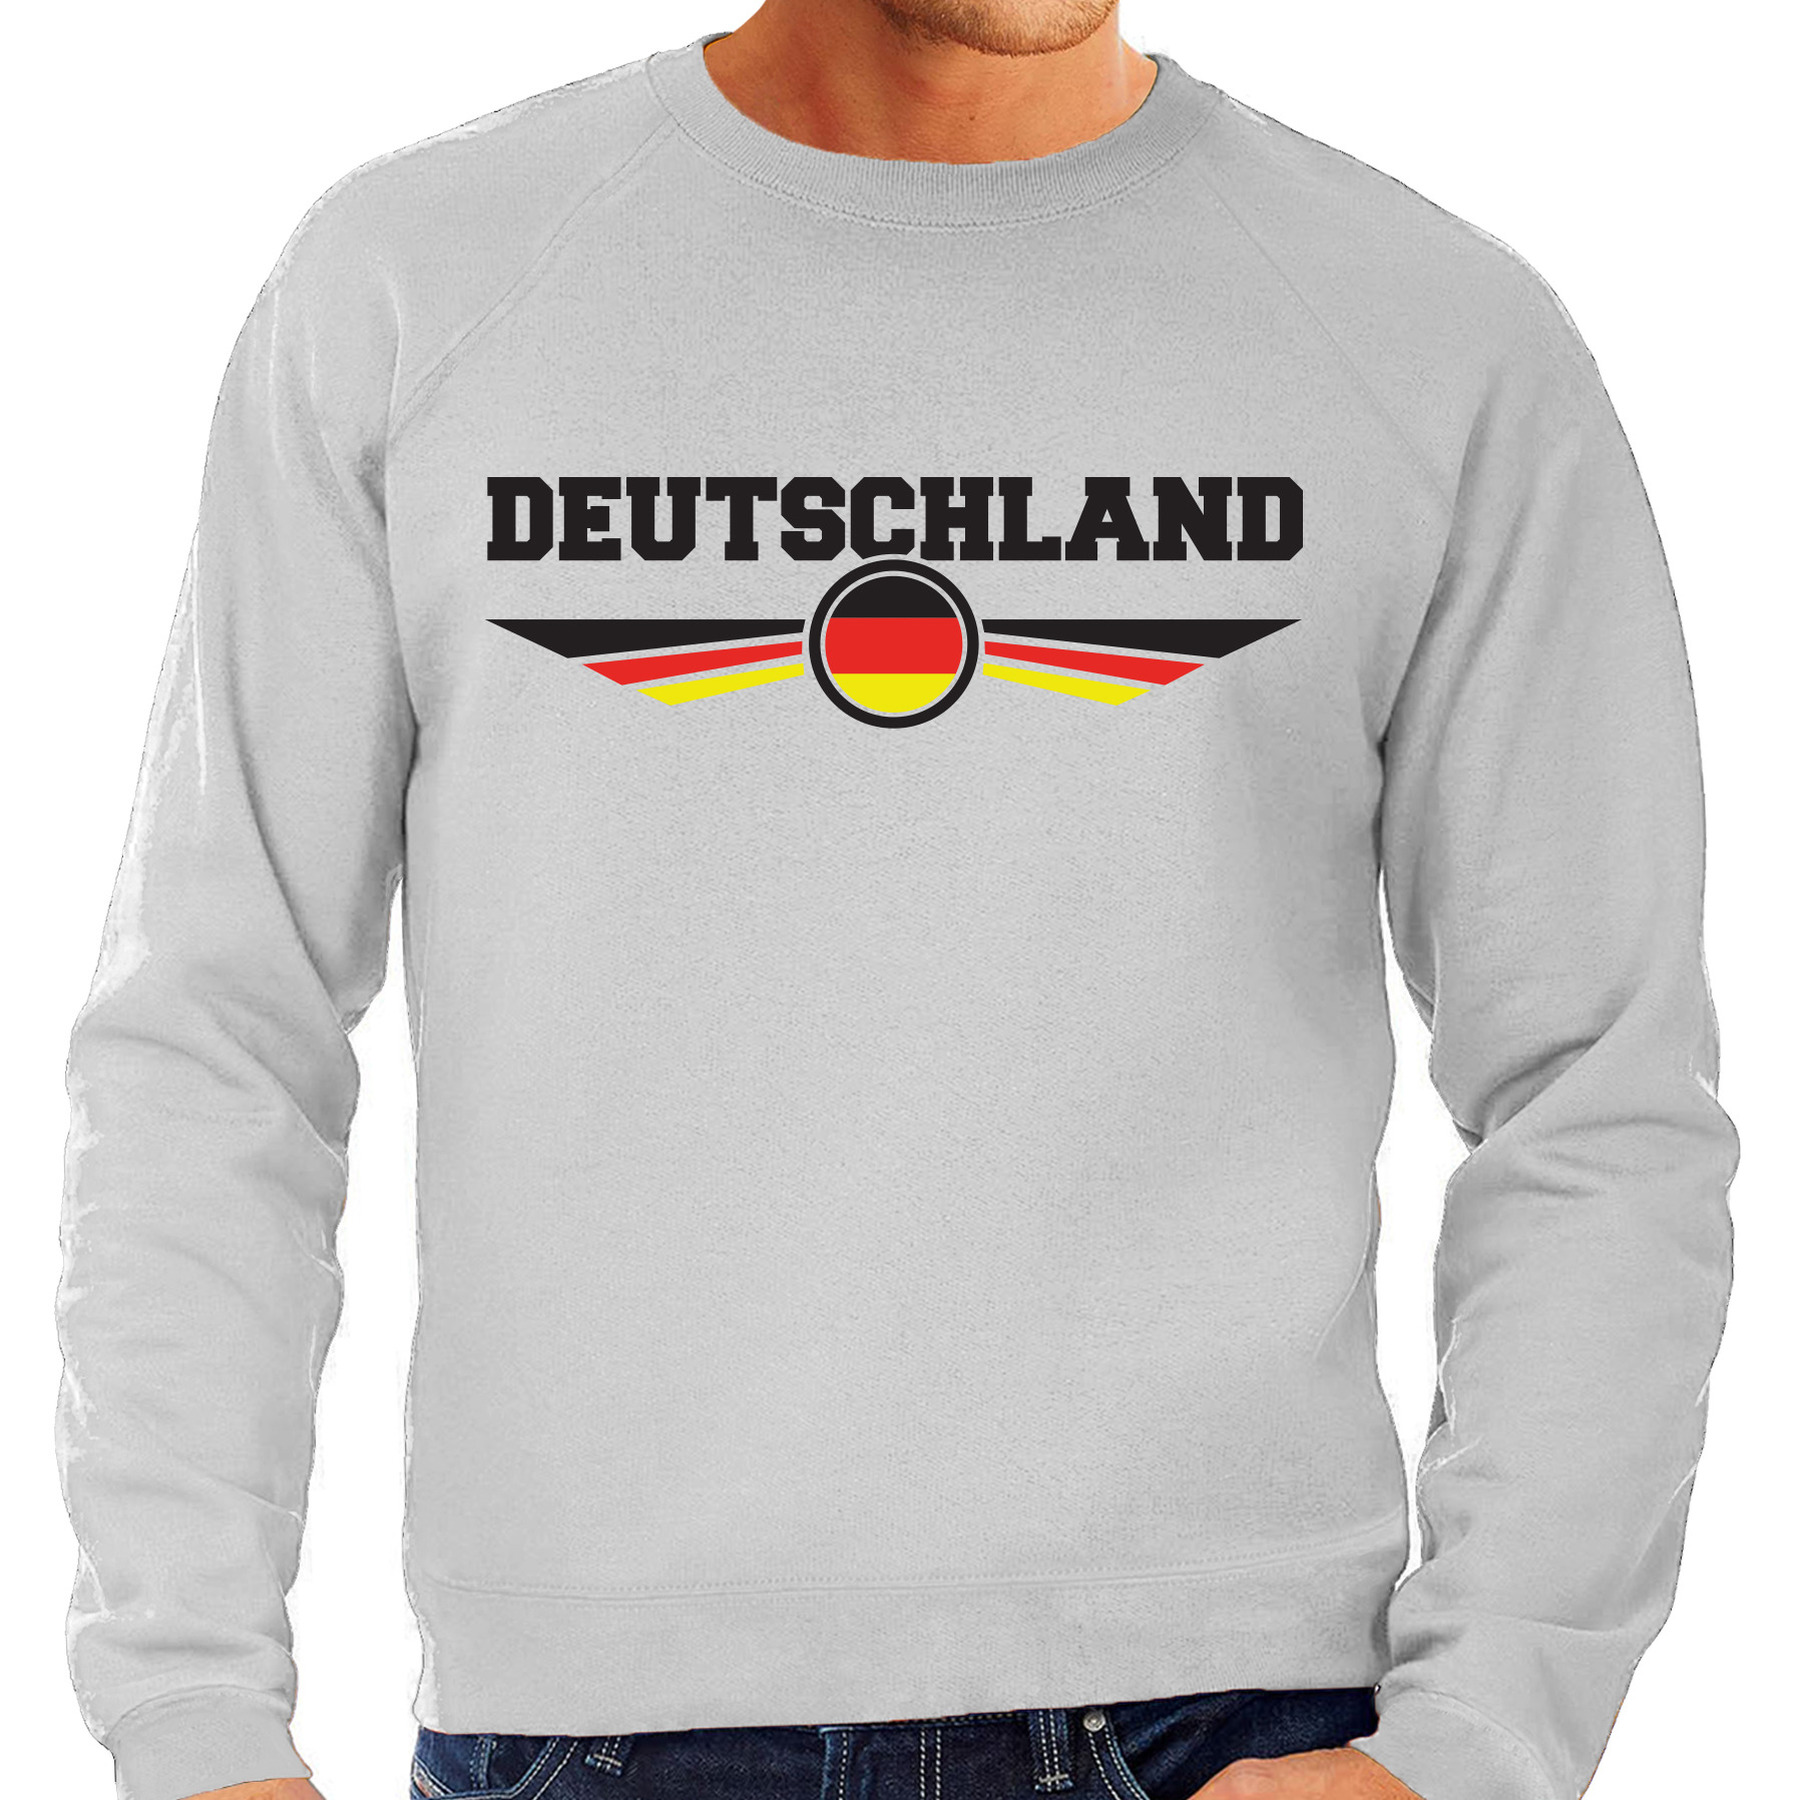 Duitsland-Deutschland landen sweater-trui grijs heren